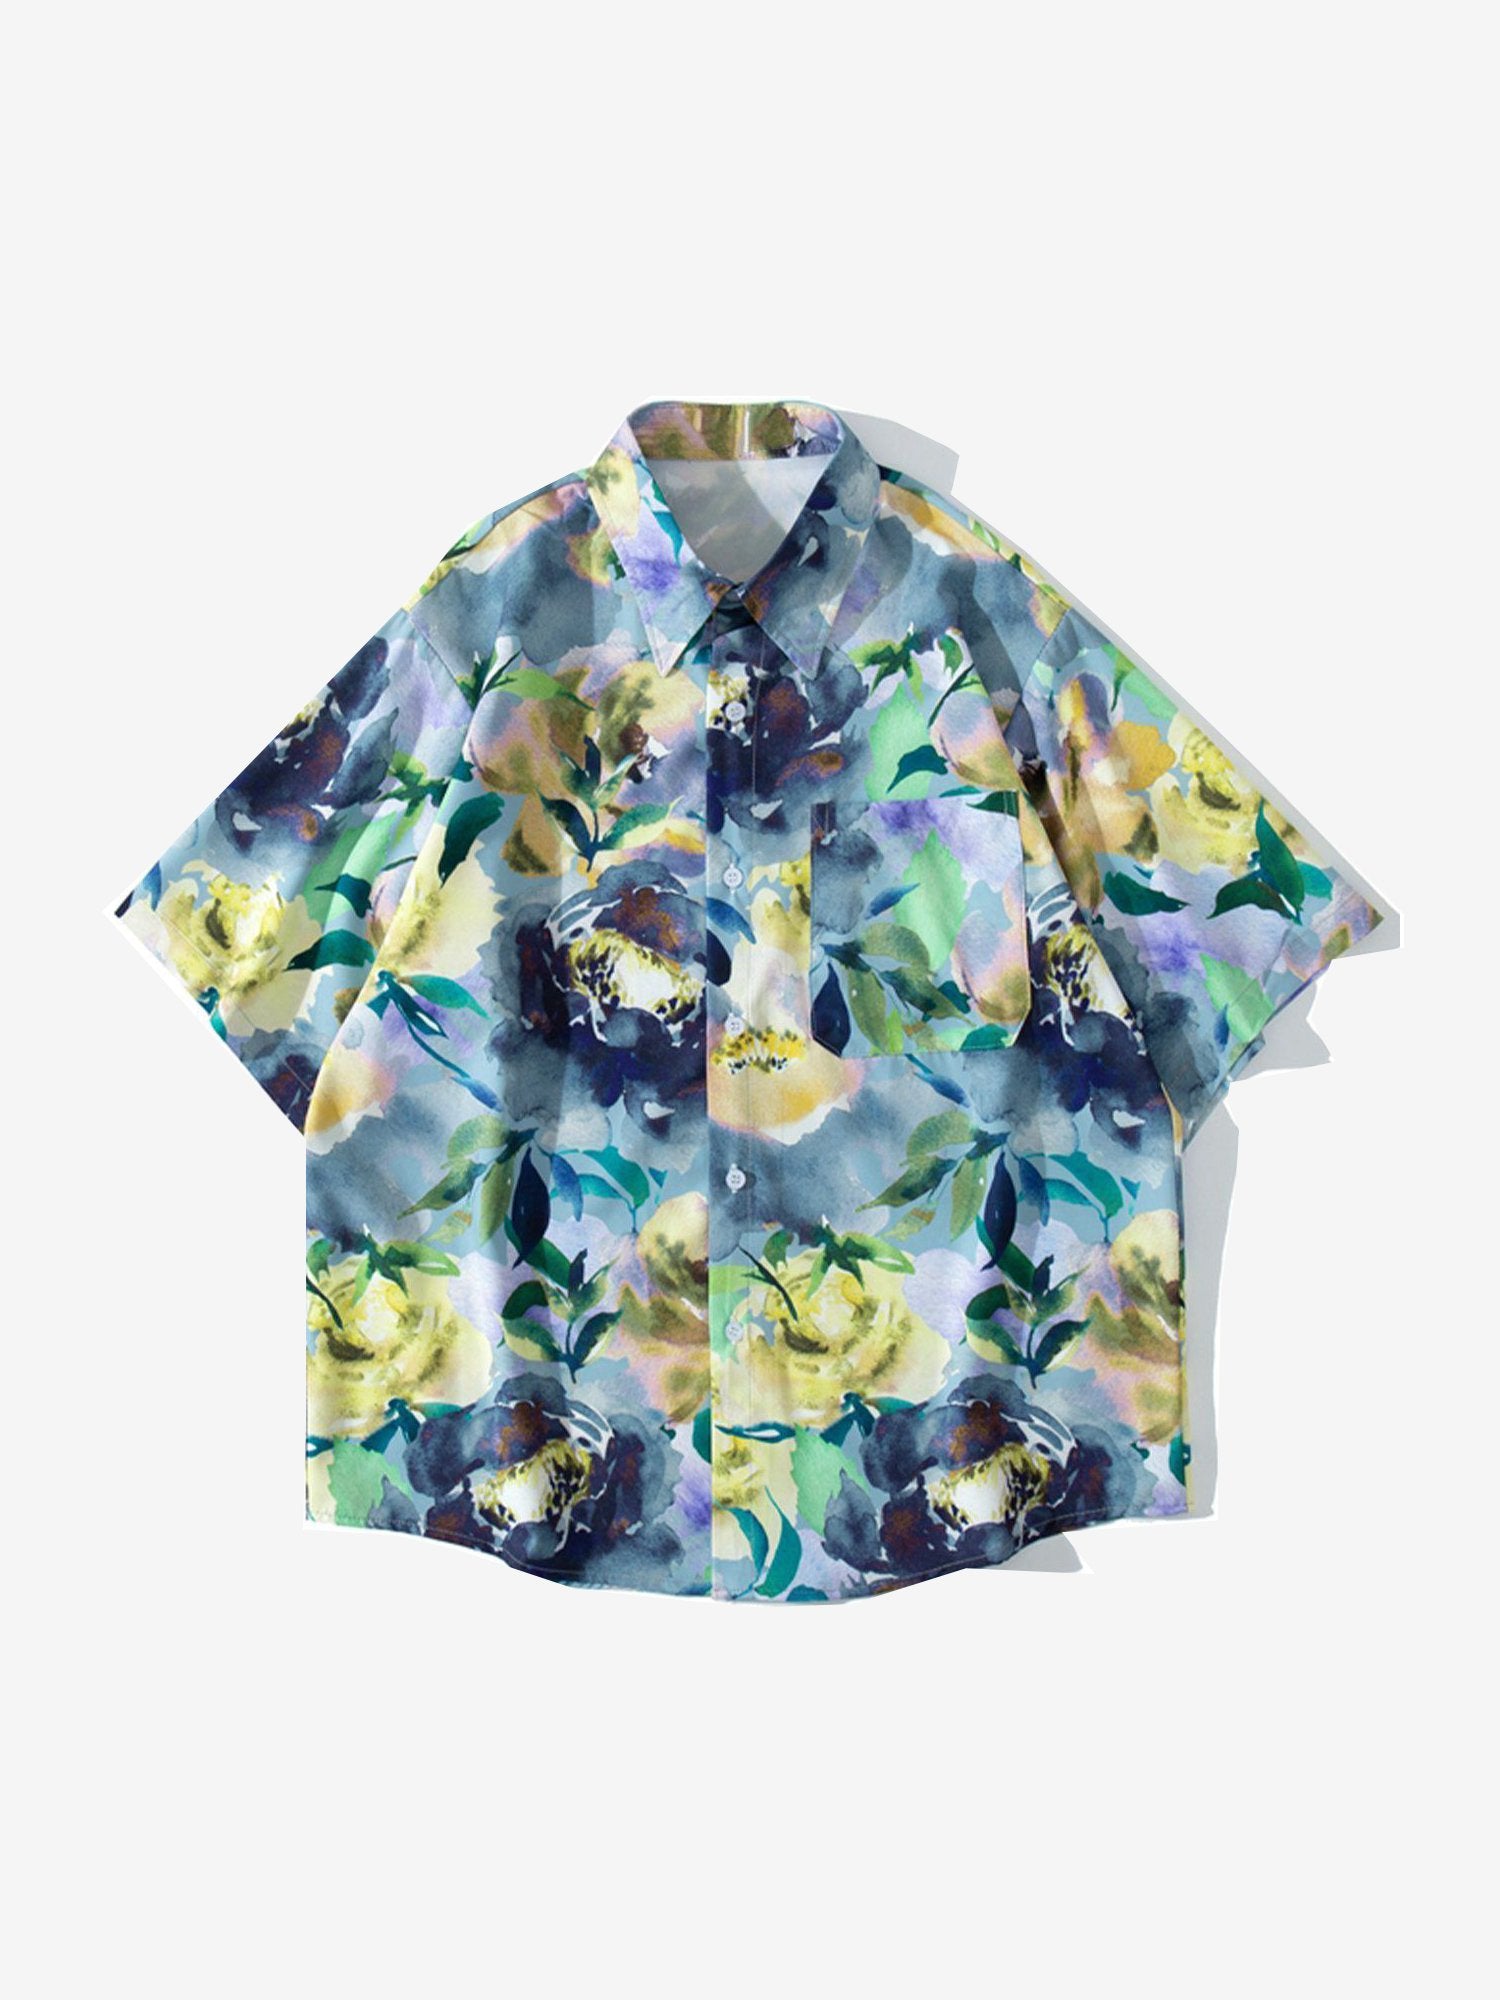 JUSTNOTAG Floral Print Short-sleeved Shirts